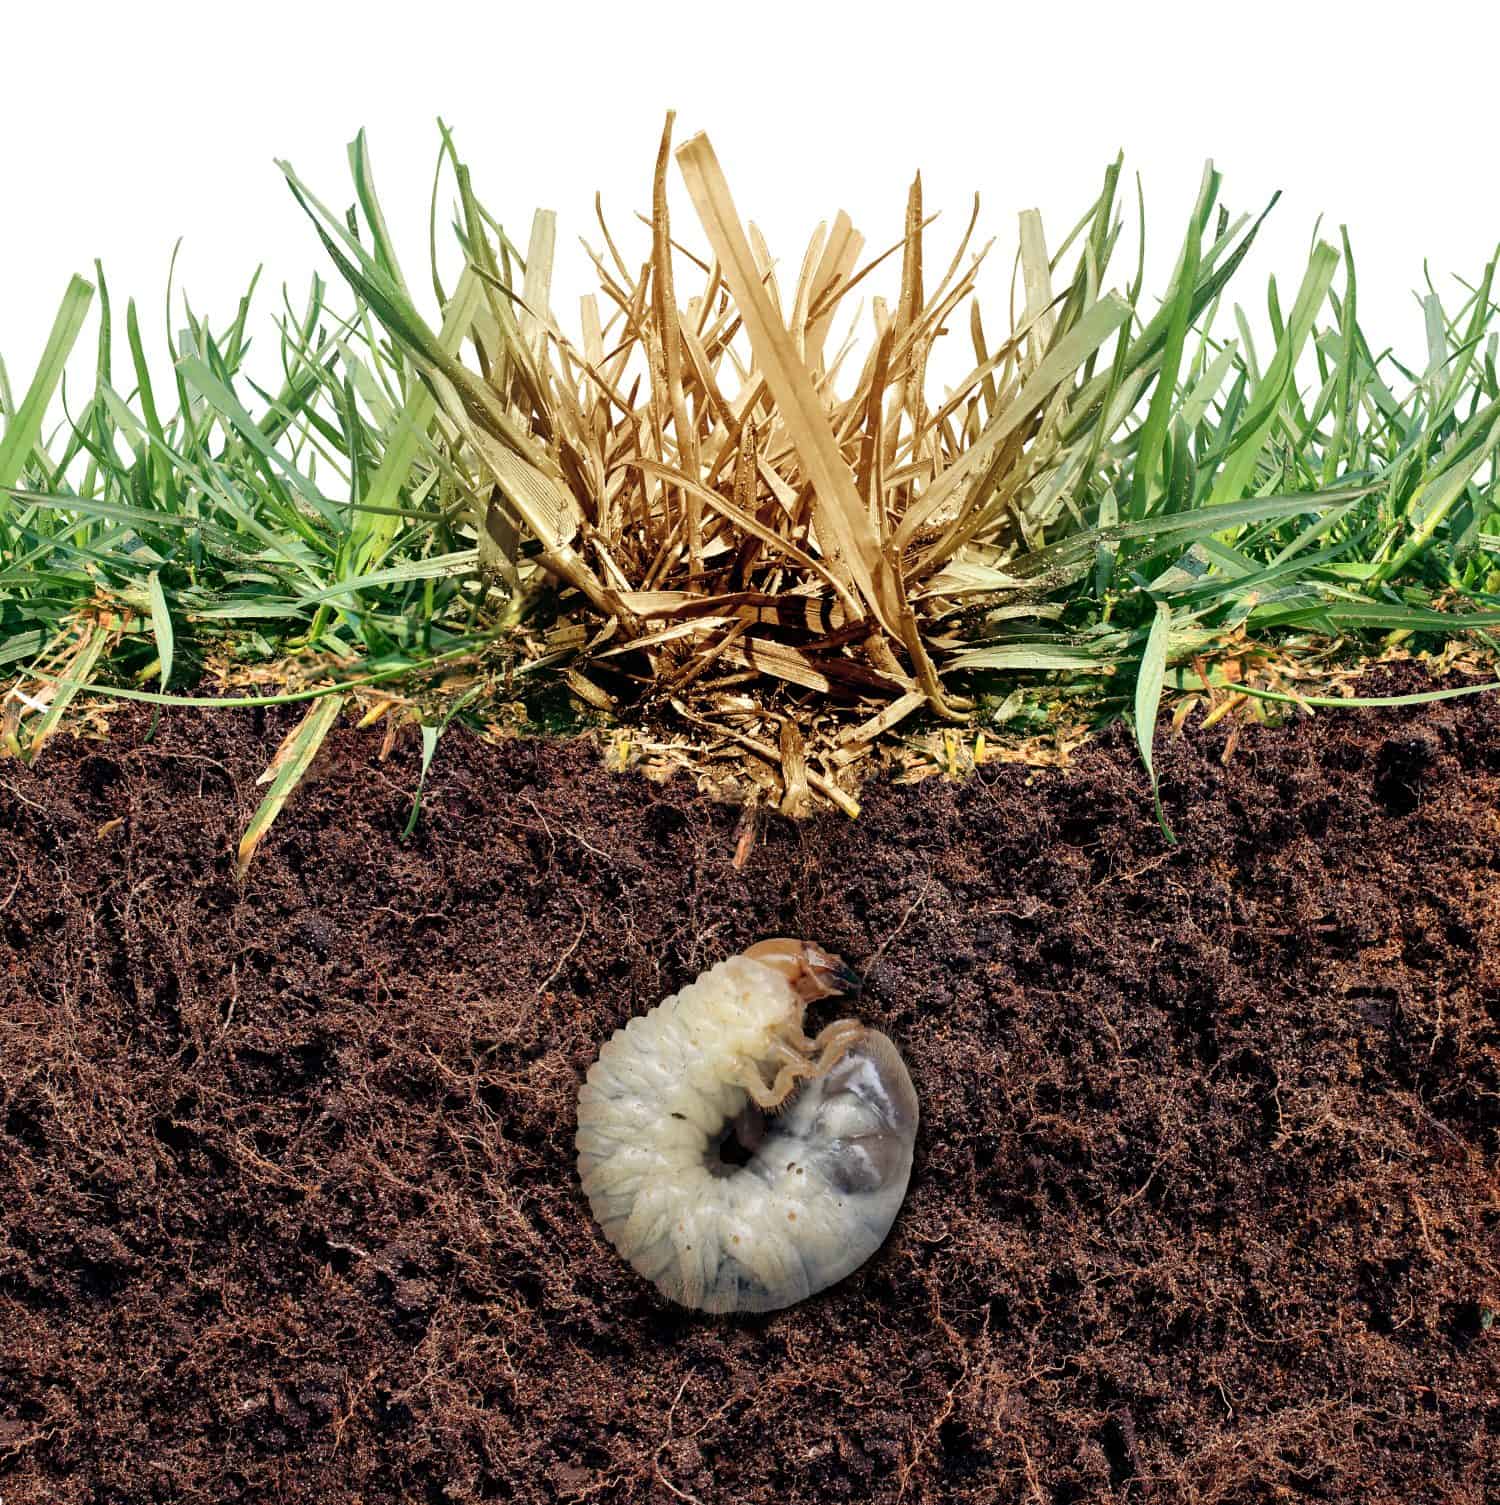 Danni alle larve del prato come larve di cinch che danneggiano le radici dell'erba causando una malattia della macchia marrone nel tappeto erboso come immagine composita isolata su uno sfondo bianco come immagine composita.